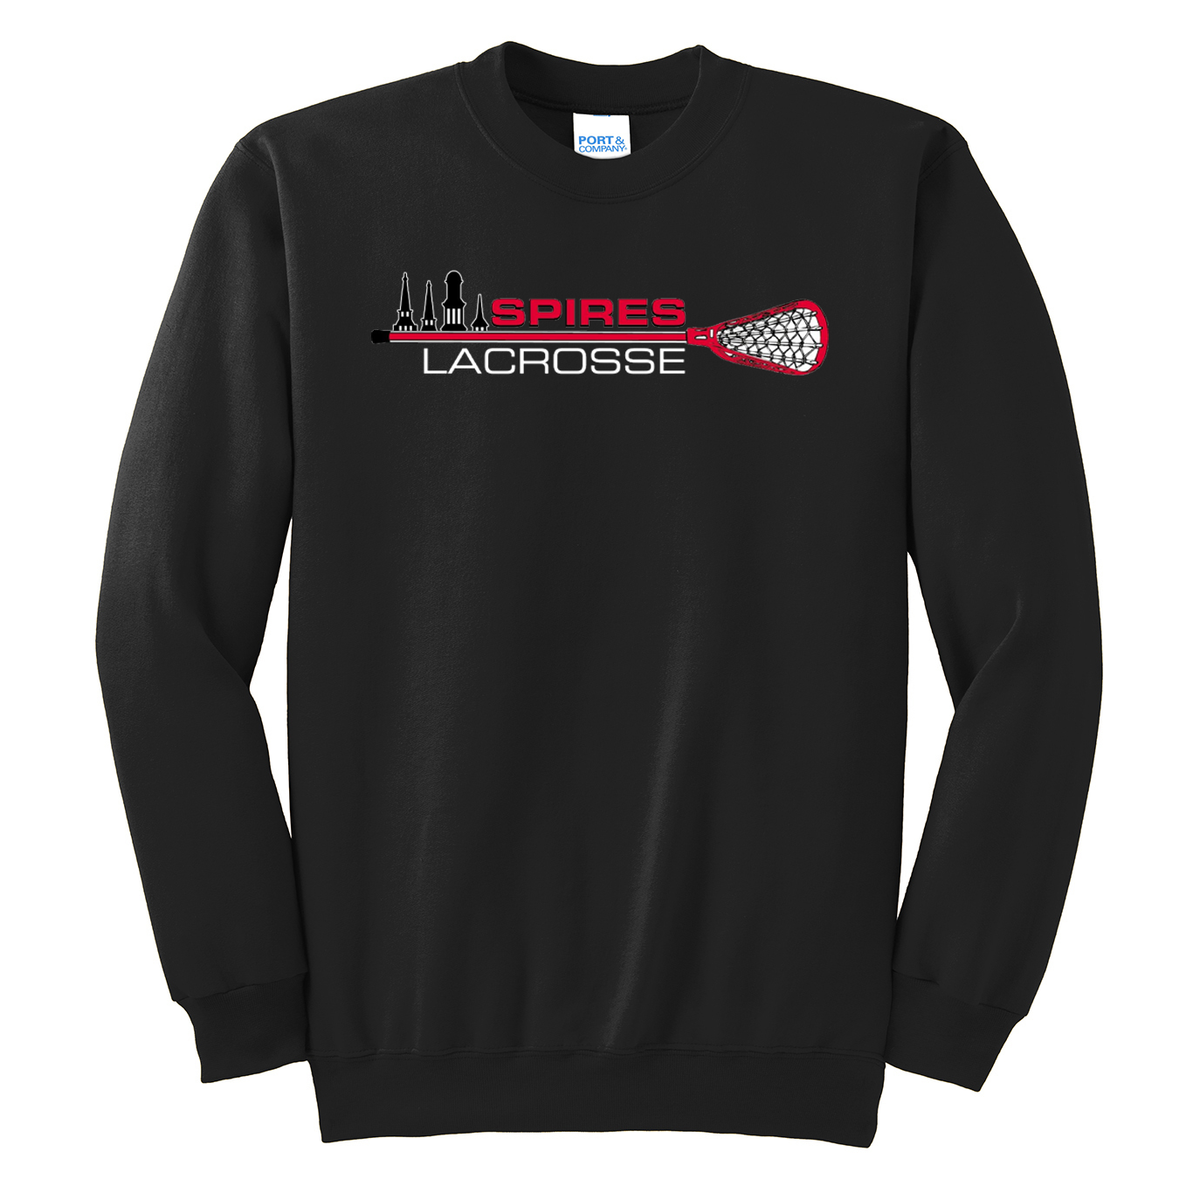 Spires Lacrosse Crew Neck Sweater